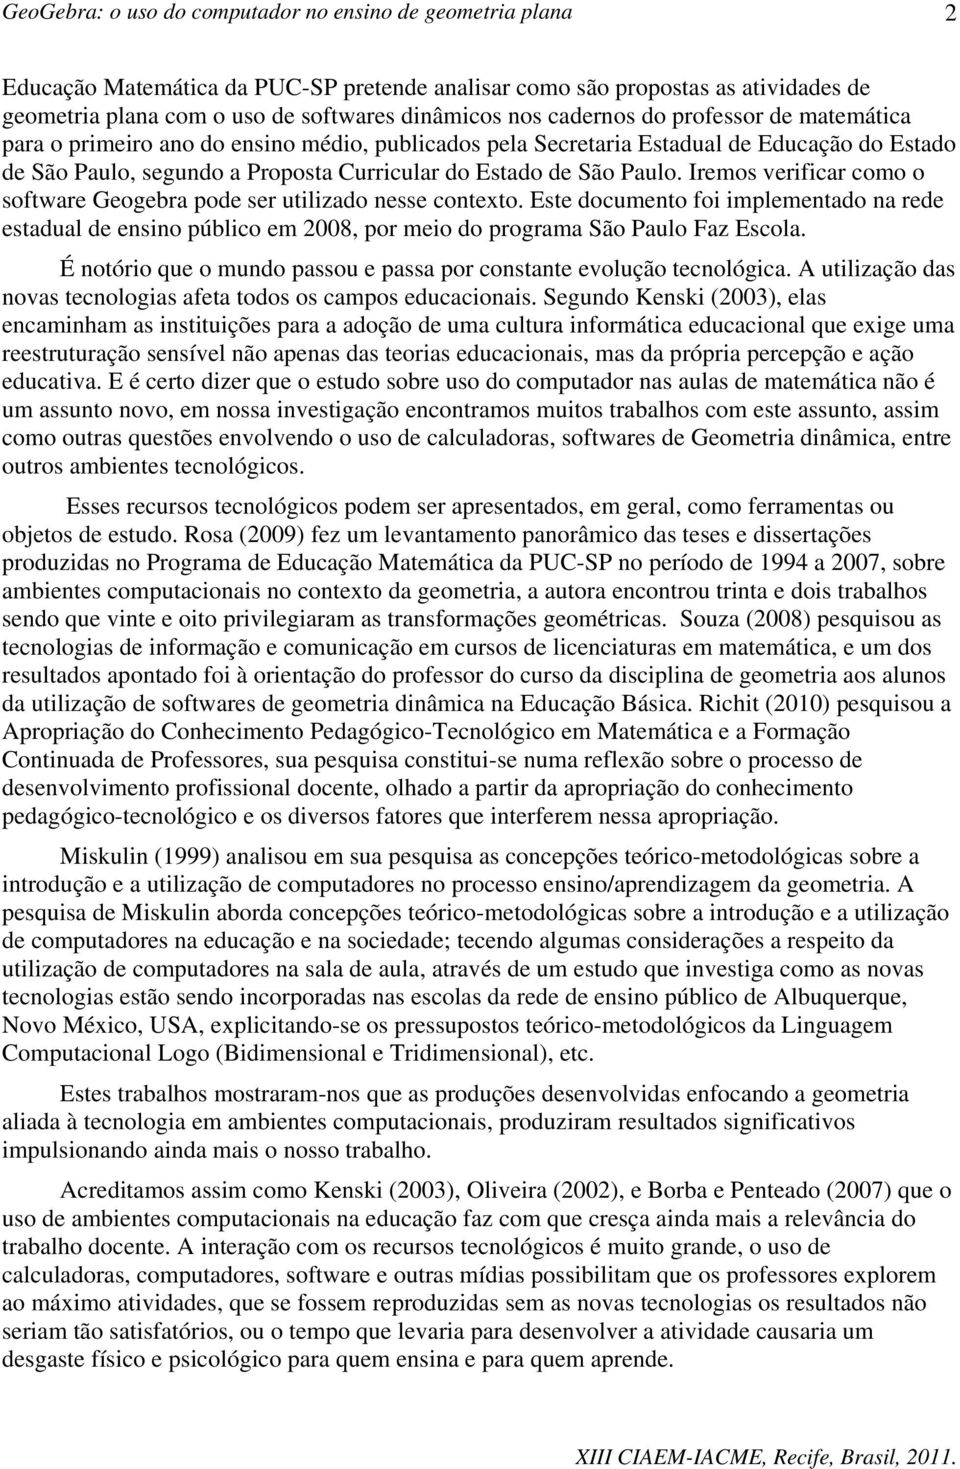 Iremos verificar como o software Geogebra pode ser utilizado nesse contexto. Este documento foi implementado na rede estadual de ensino público em 2008, por meio do programa São Paulo Faz Escola.